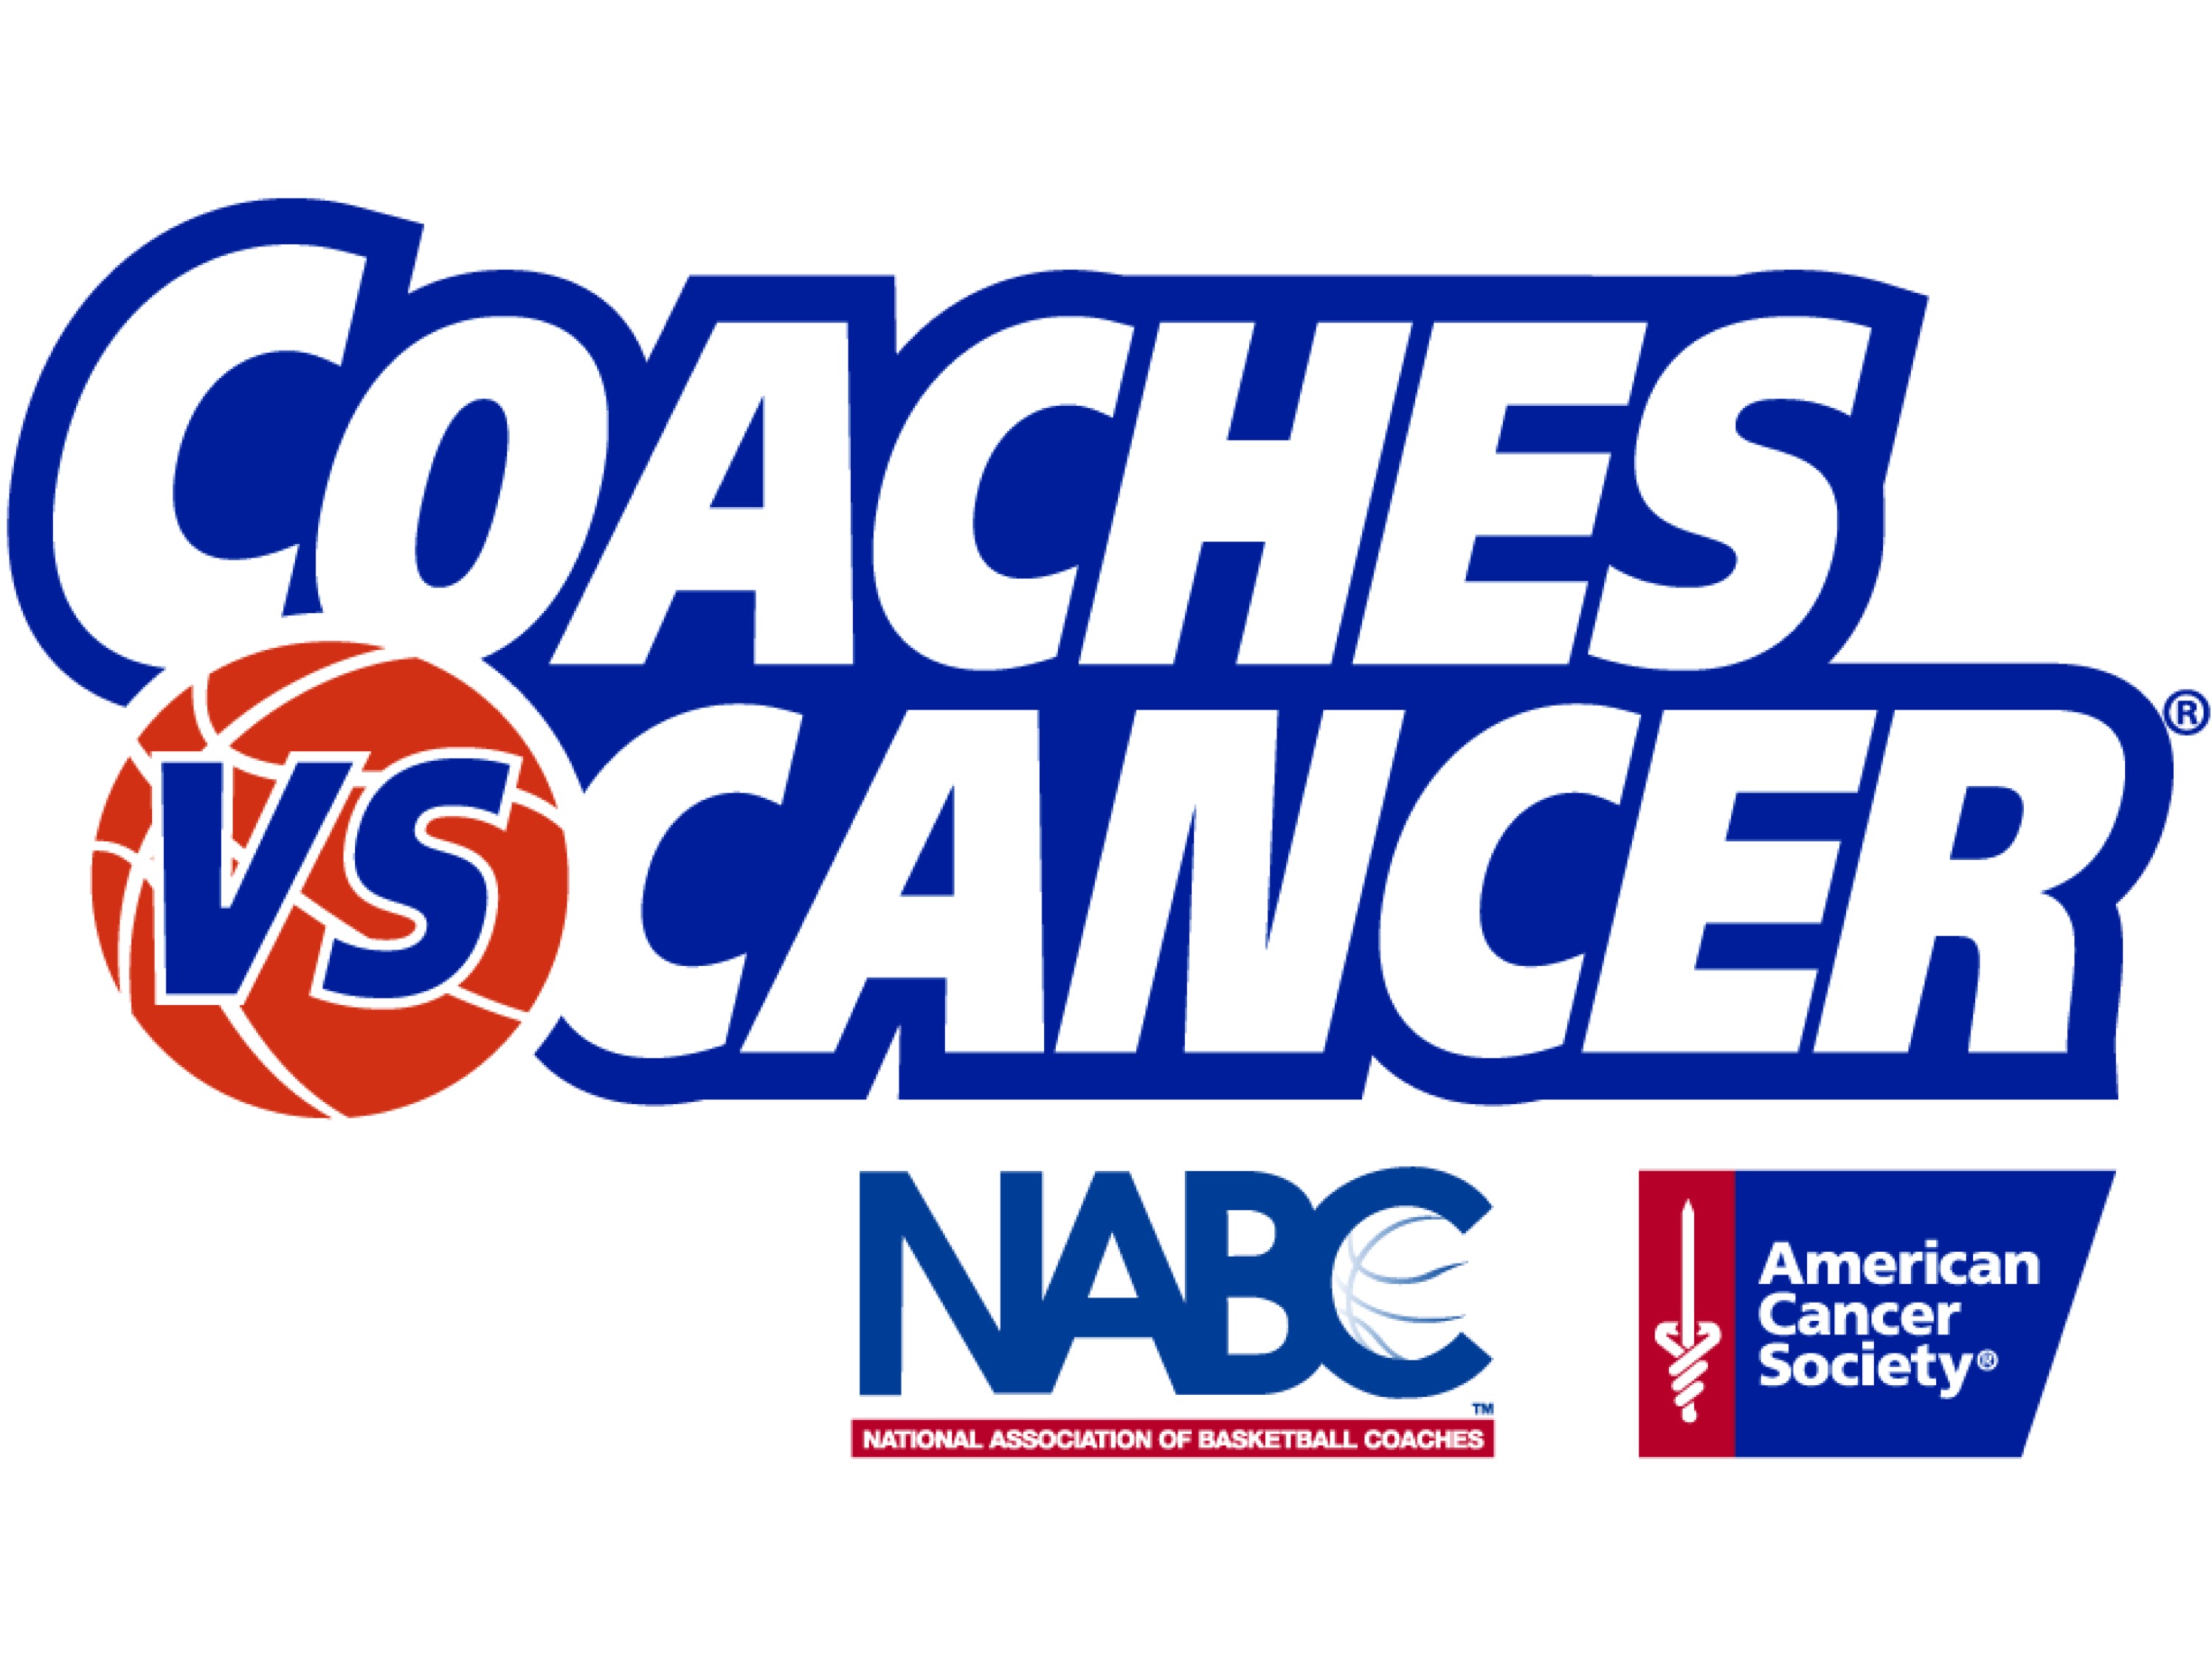 Coaches vs Cancer